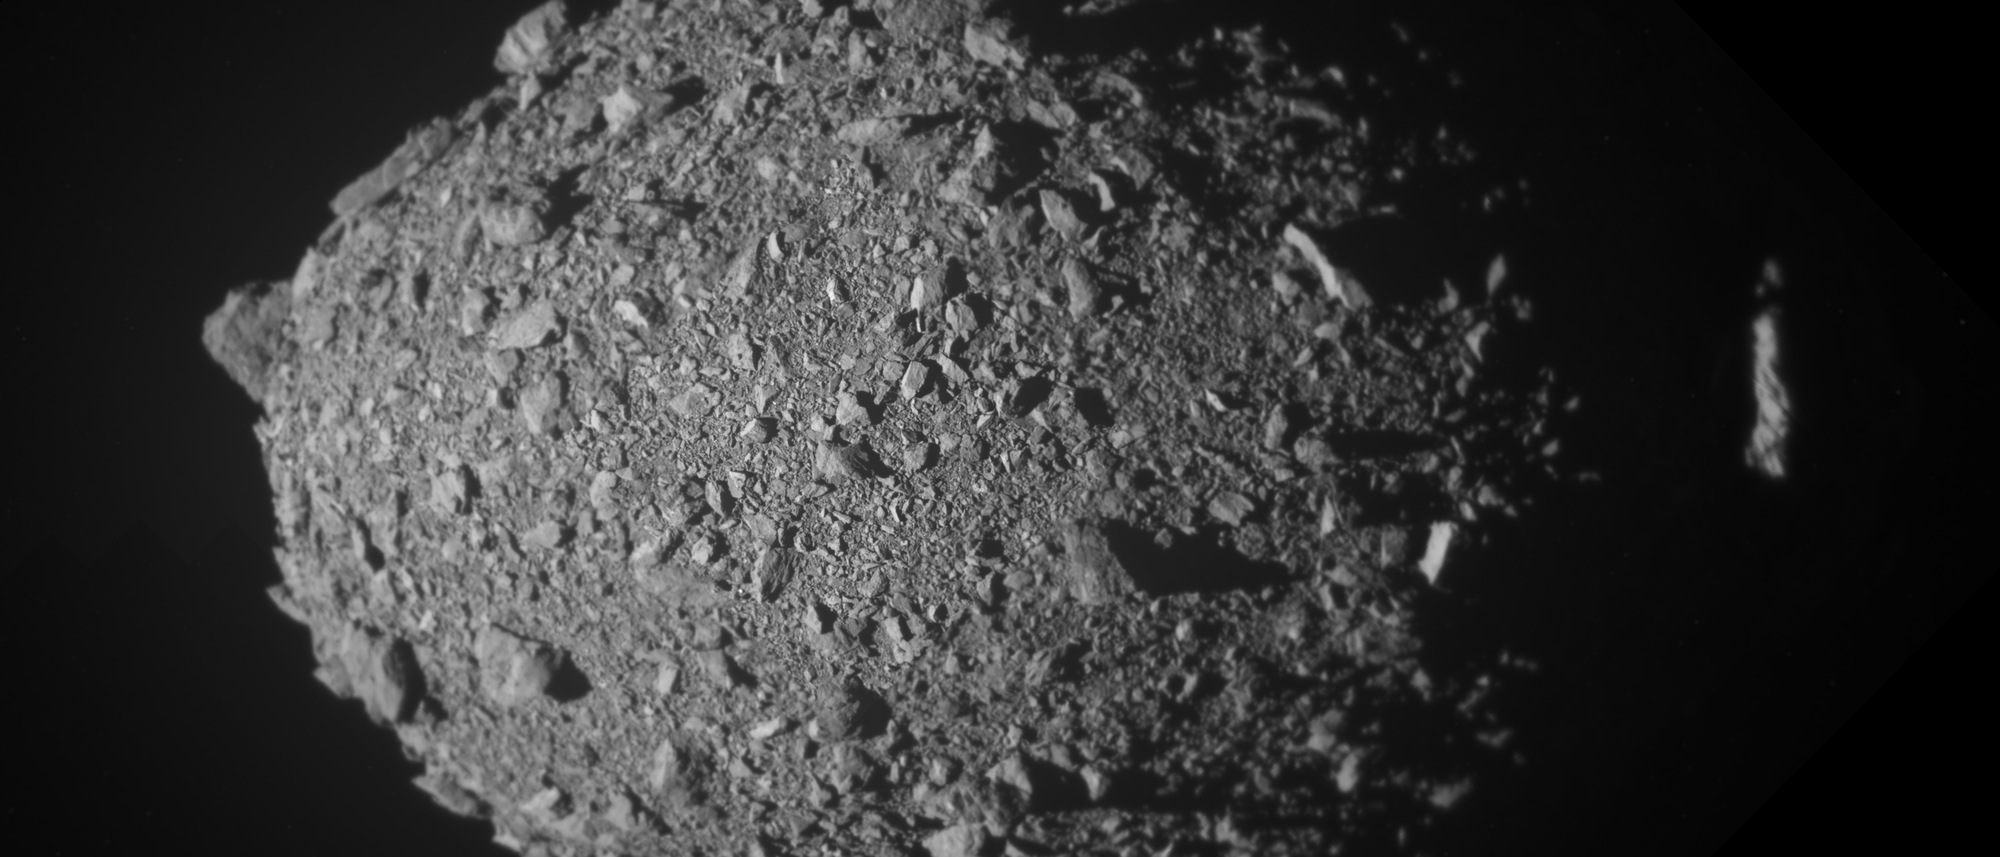 In diesem aus mehreren Bildern zusammengesetzten Bild ist der Asteroidenmond Dimorphos kurz vor dem Aufprall der DART-Sonde zu sehen. Der Asteroid ähnelt einem eierförmigen, losen Schutthaufe aus kleinen Steinen und Geröll. Die Aufnahme ist in schwarz/weiß.